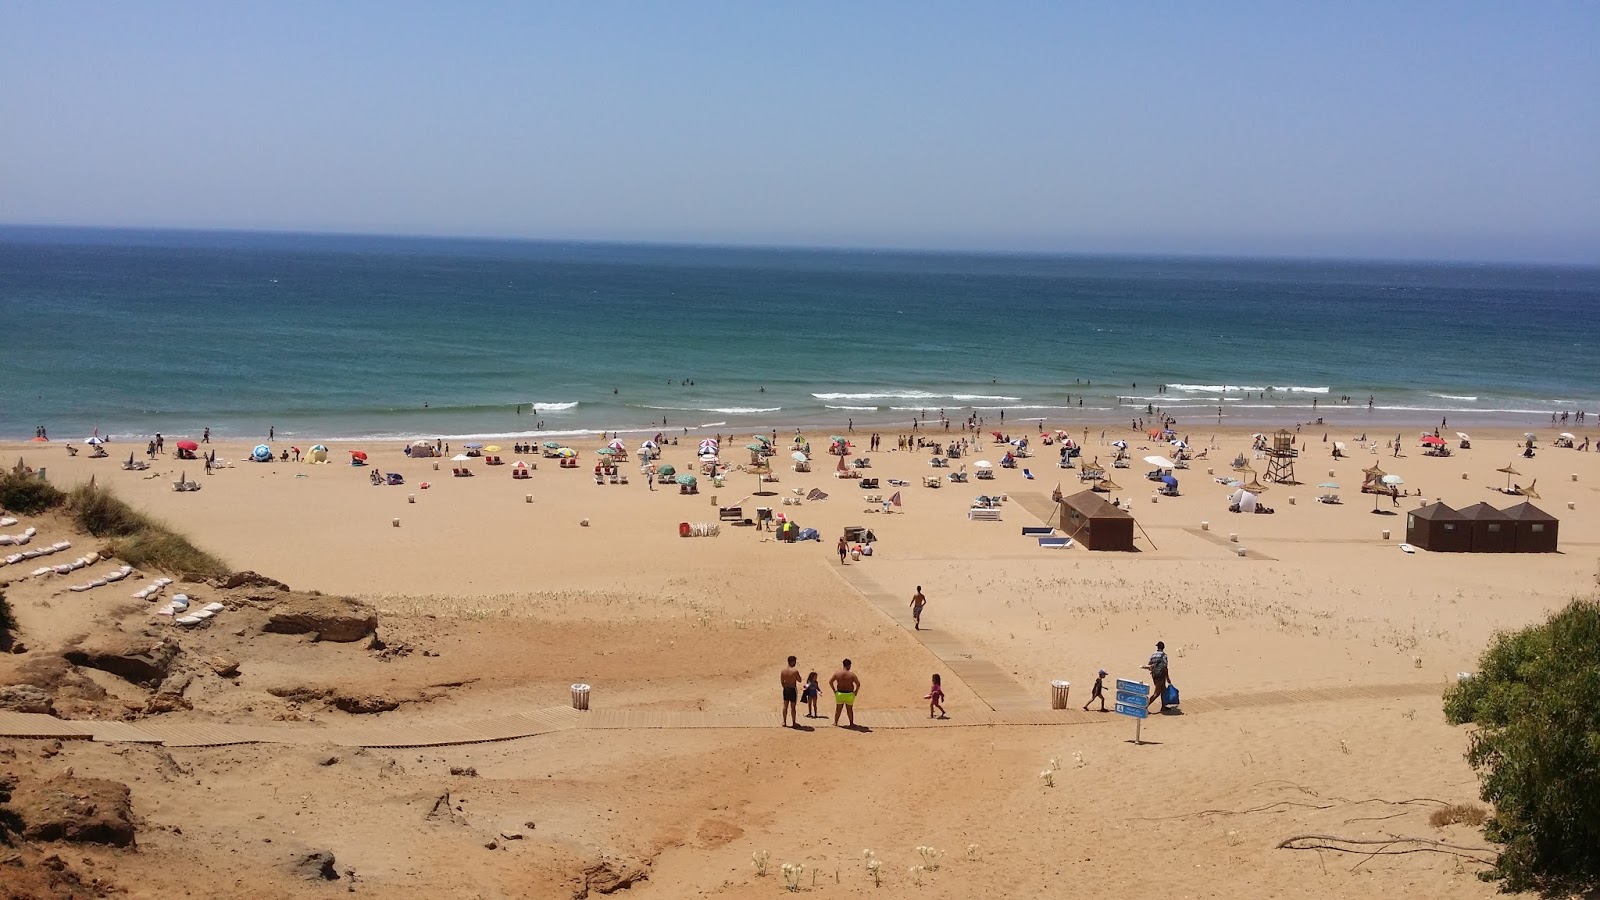 Achakar Beach'in fotoğrafı geniş plaj ile birlikte